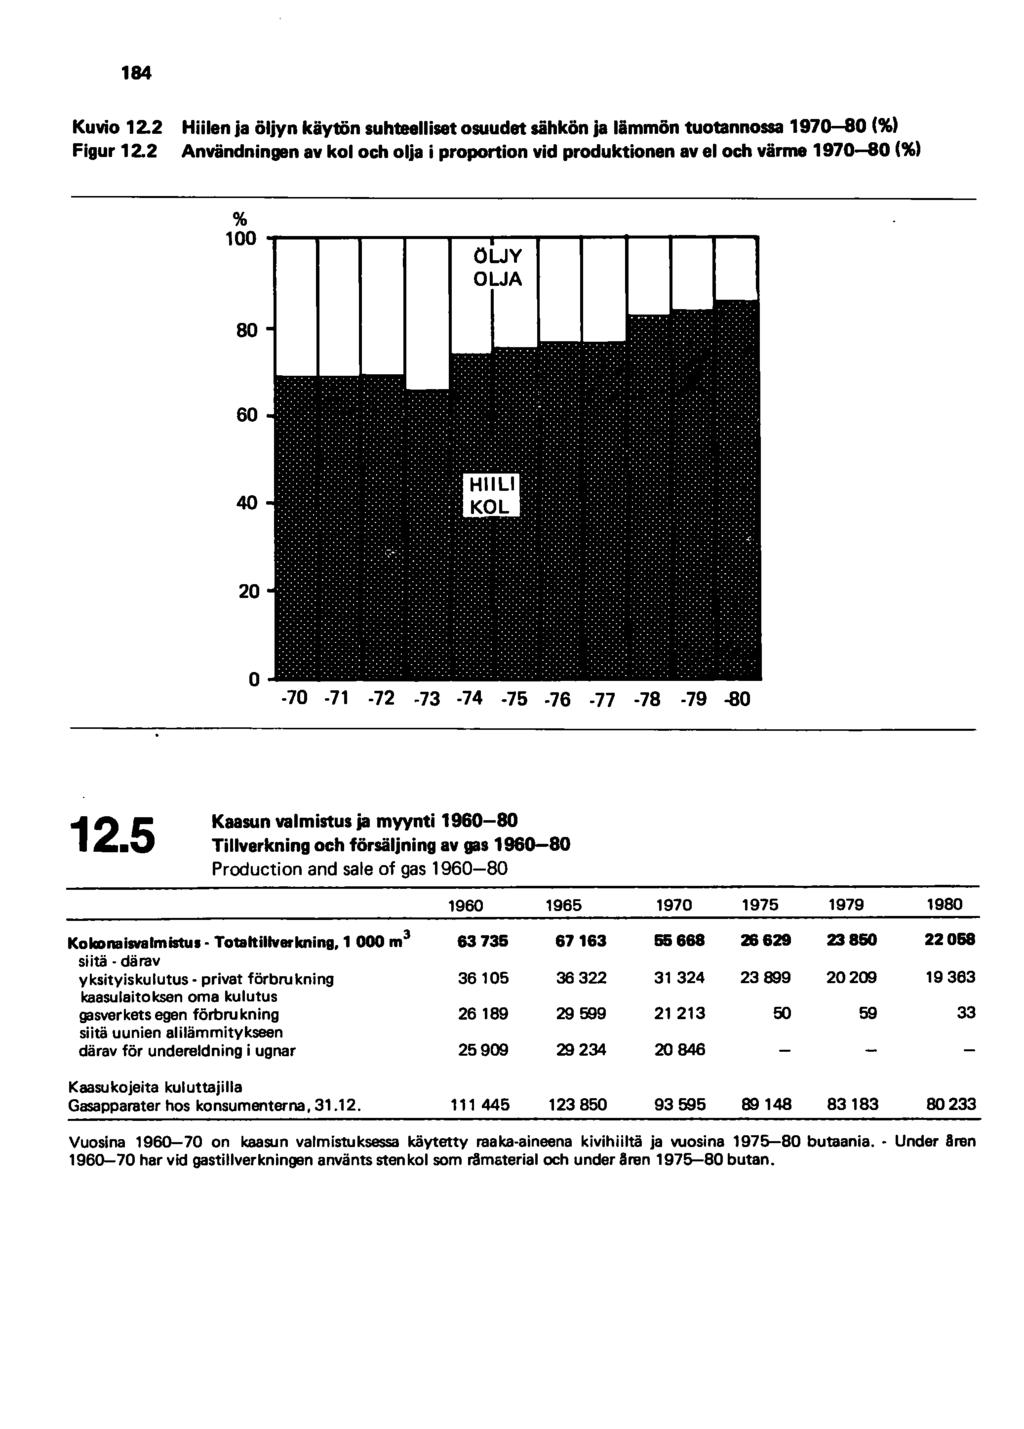 184 Kuvio 12.2 Hiilen ja öljyn käytön suhteelliset osuudet sähkön ja lämmön tuotannossa 1970-&0 (%) Figur 12.